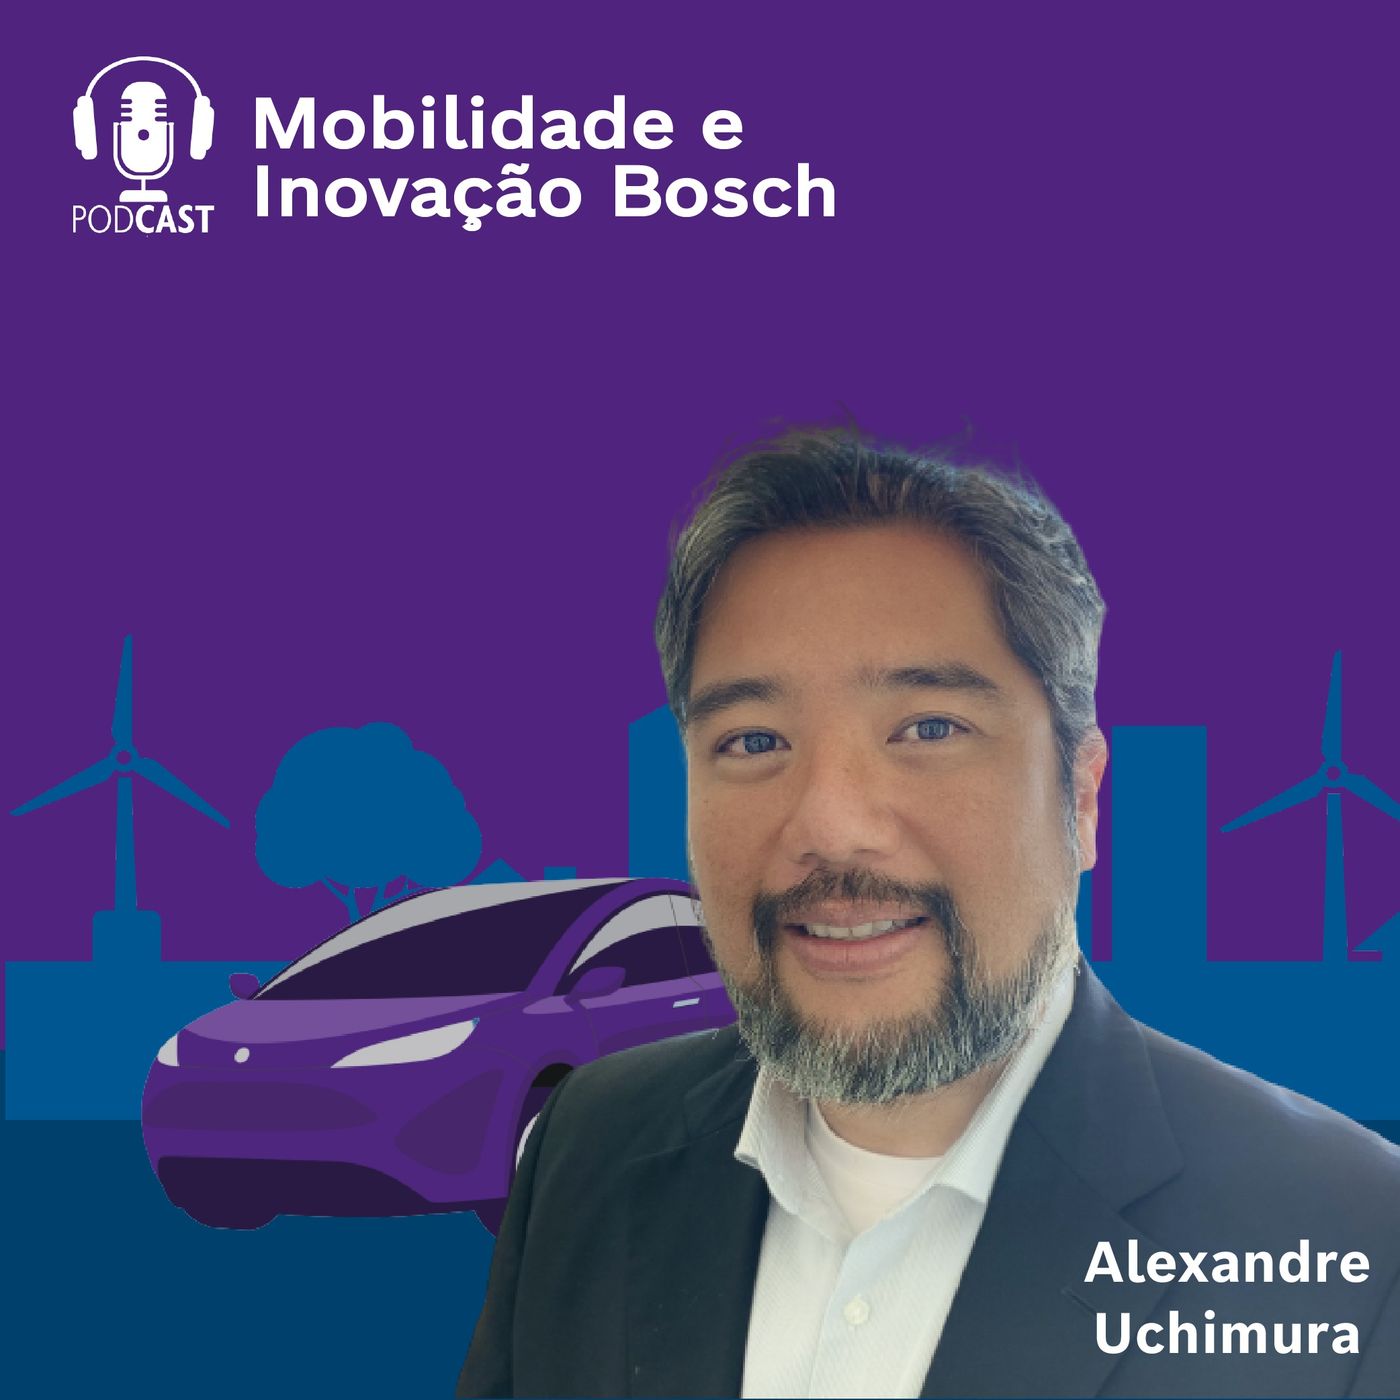 Mobilidade e Inovação Bosch #09 - Eficiência energética na mobilidade